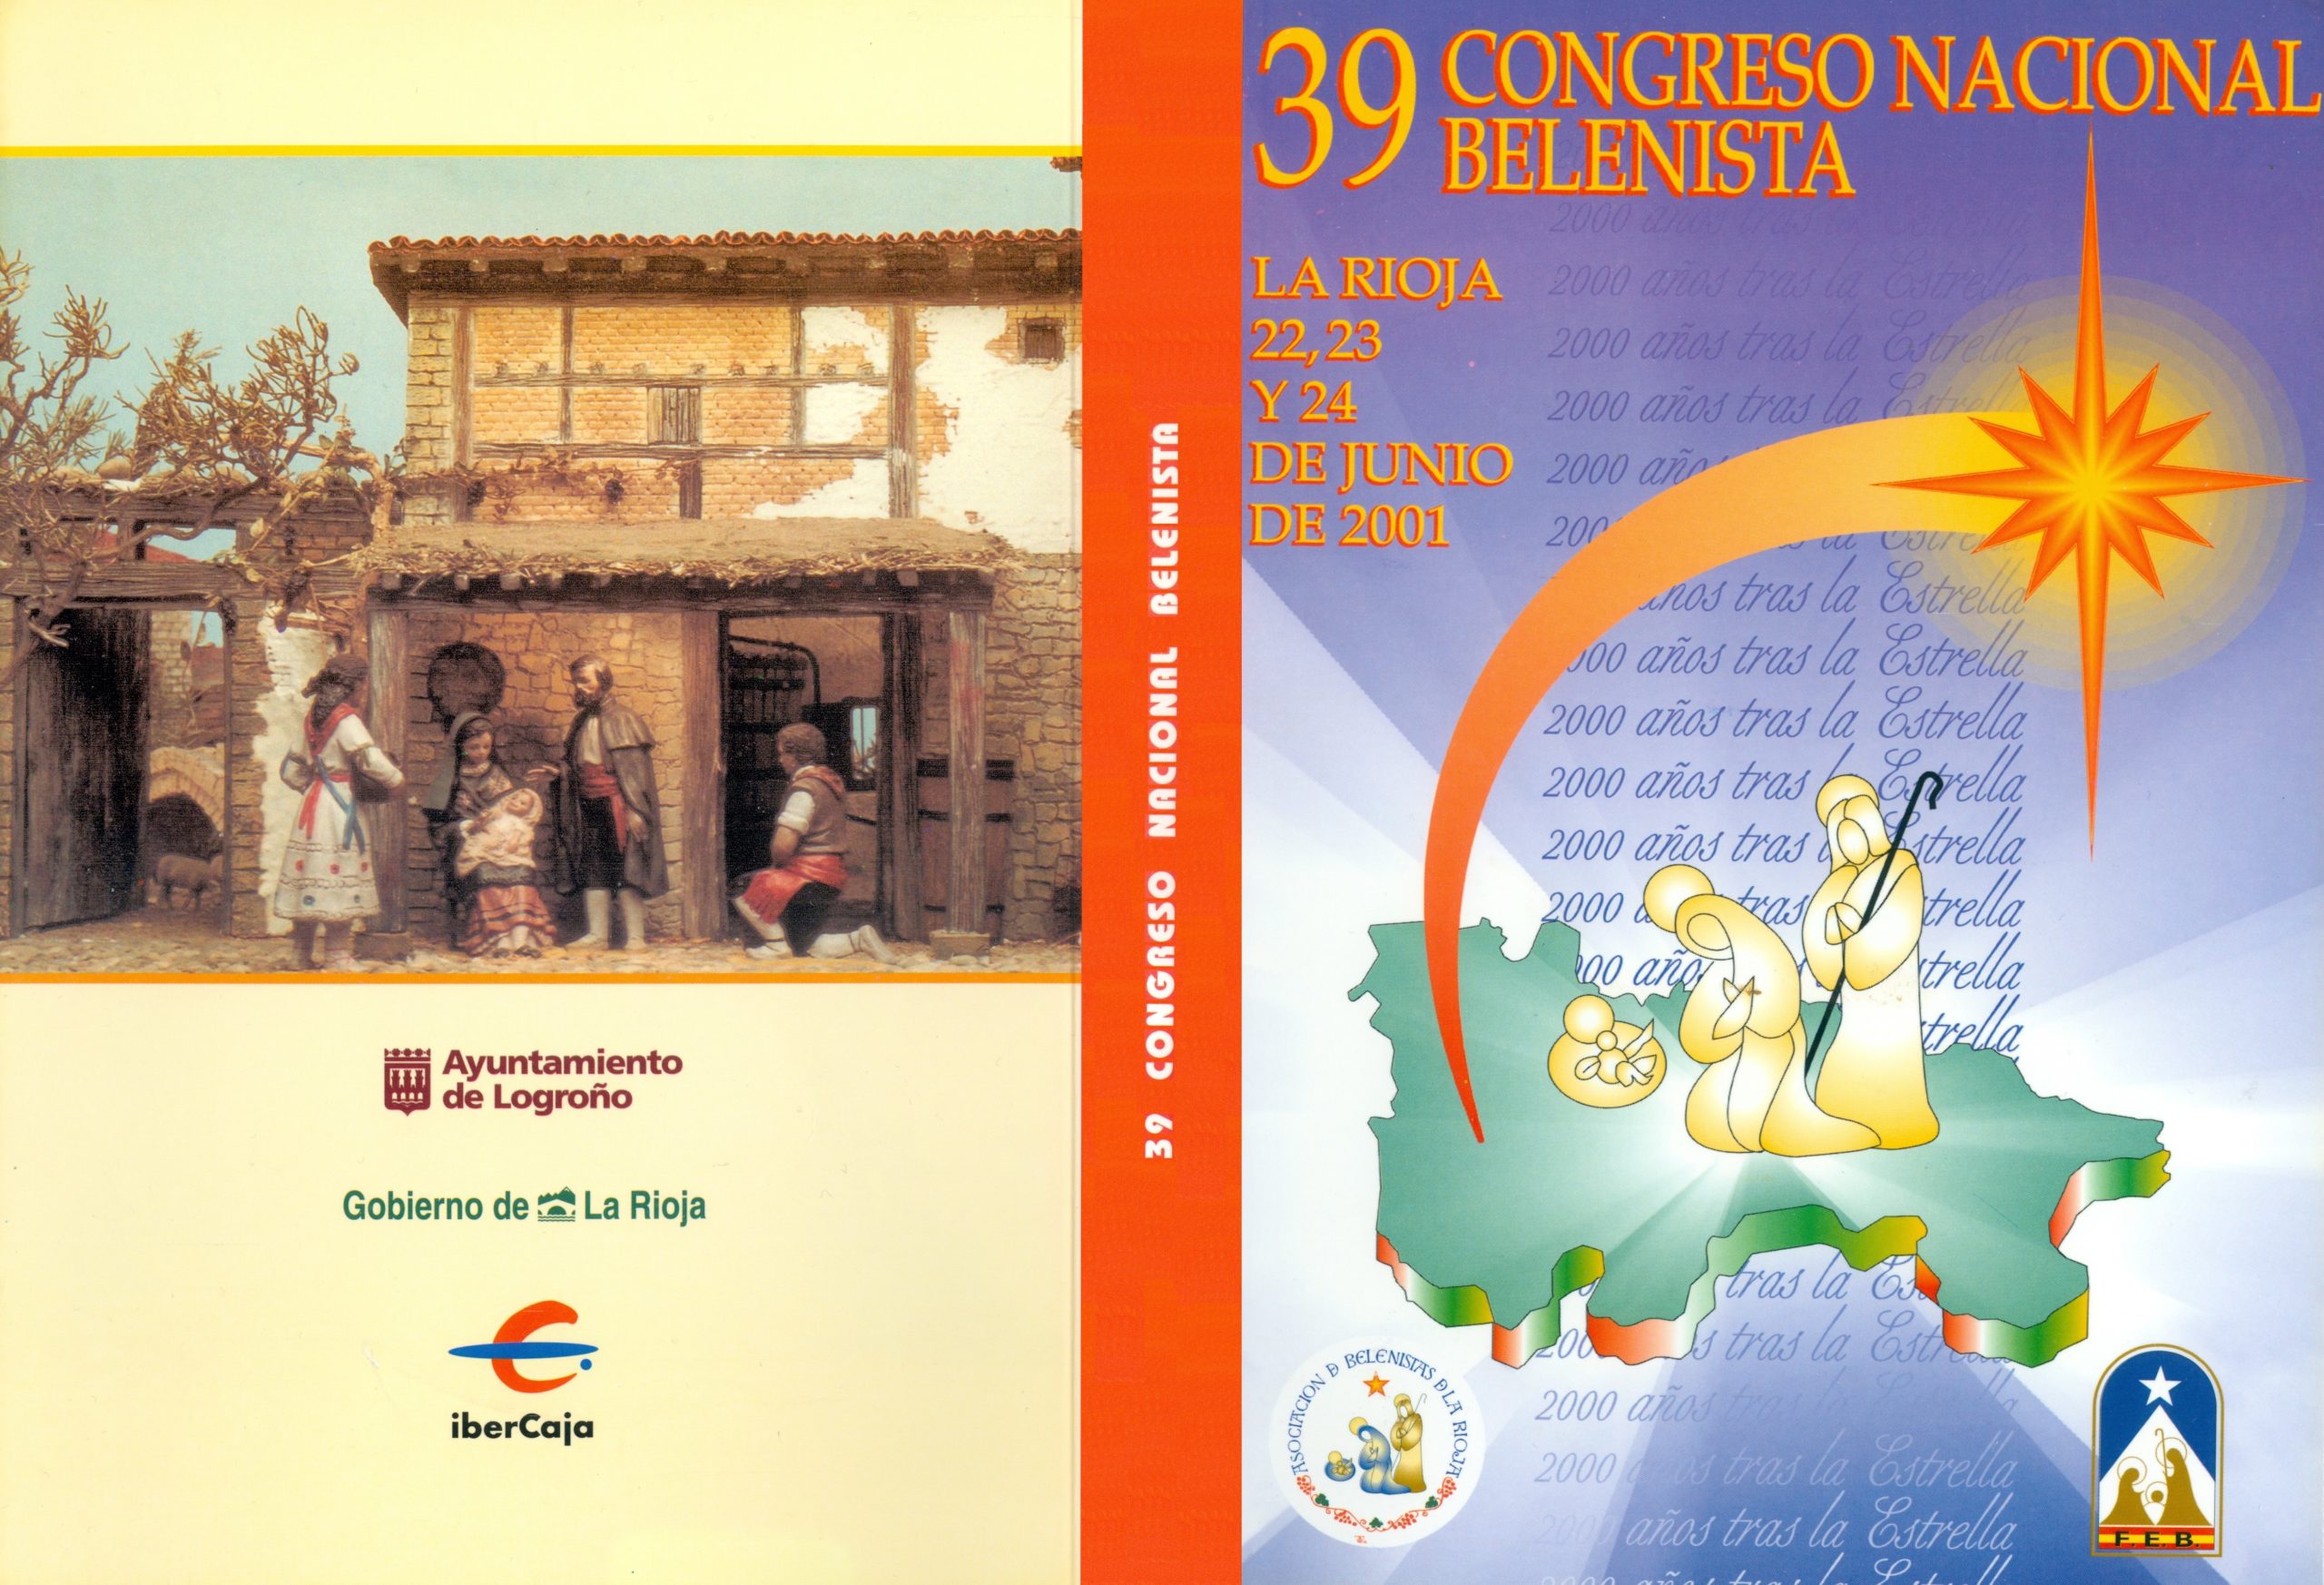 Cubiertas del "Libro del XXXIX Congreso Nacional Belenista" celebrado en Logroño del 21 al 24 de junio de 2001, editado por la Asociación de Belenistas de La Rioja